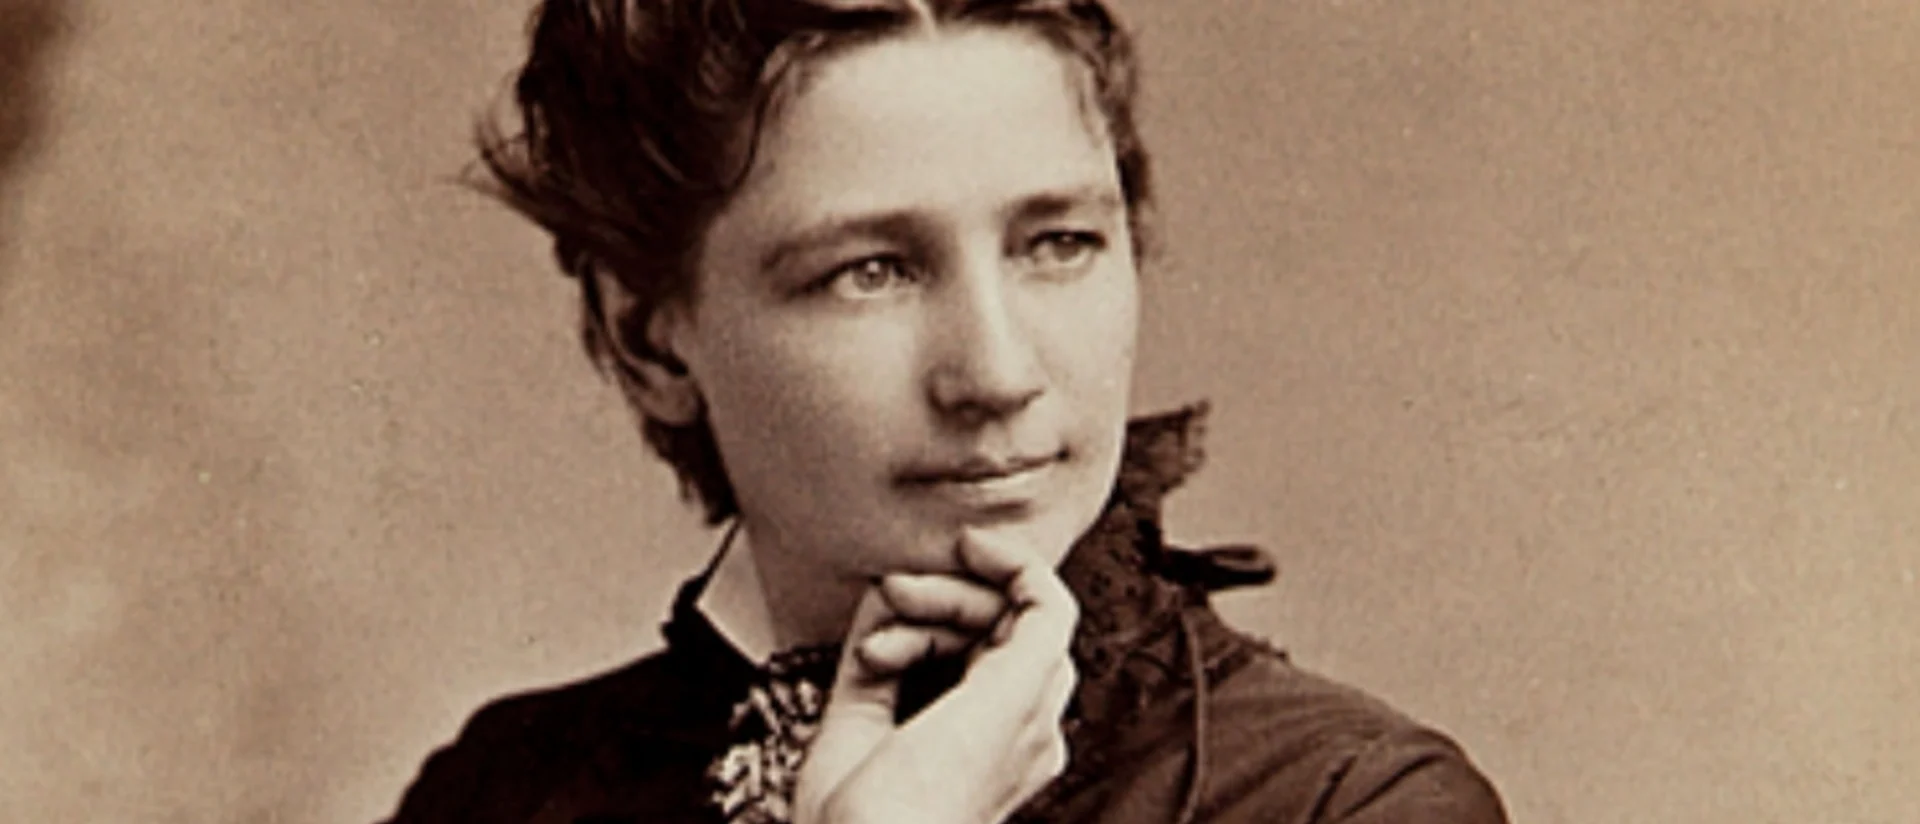 Βικτόρια Γούντχαλ (1838 – 1927) ήταν σημαντική προδρομική μορφή του φεμινιστικού κινήματος των ΗΠΑ